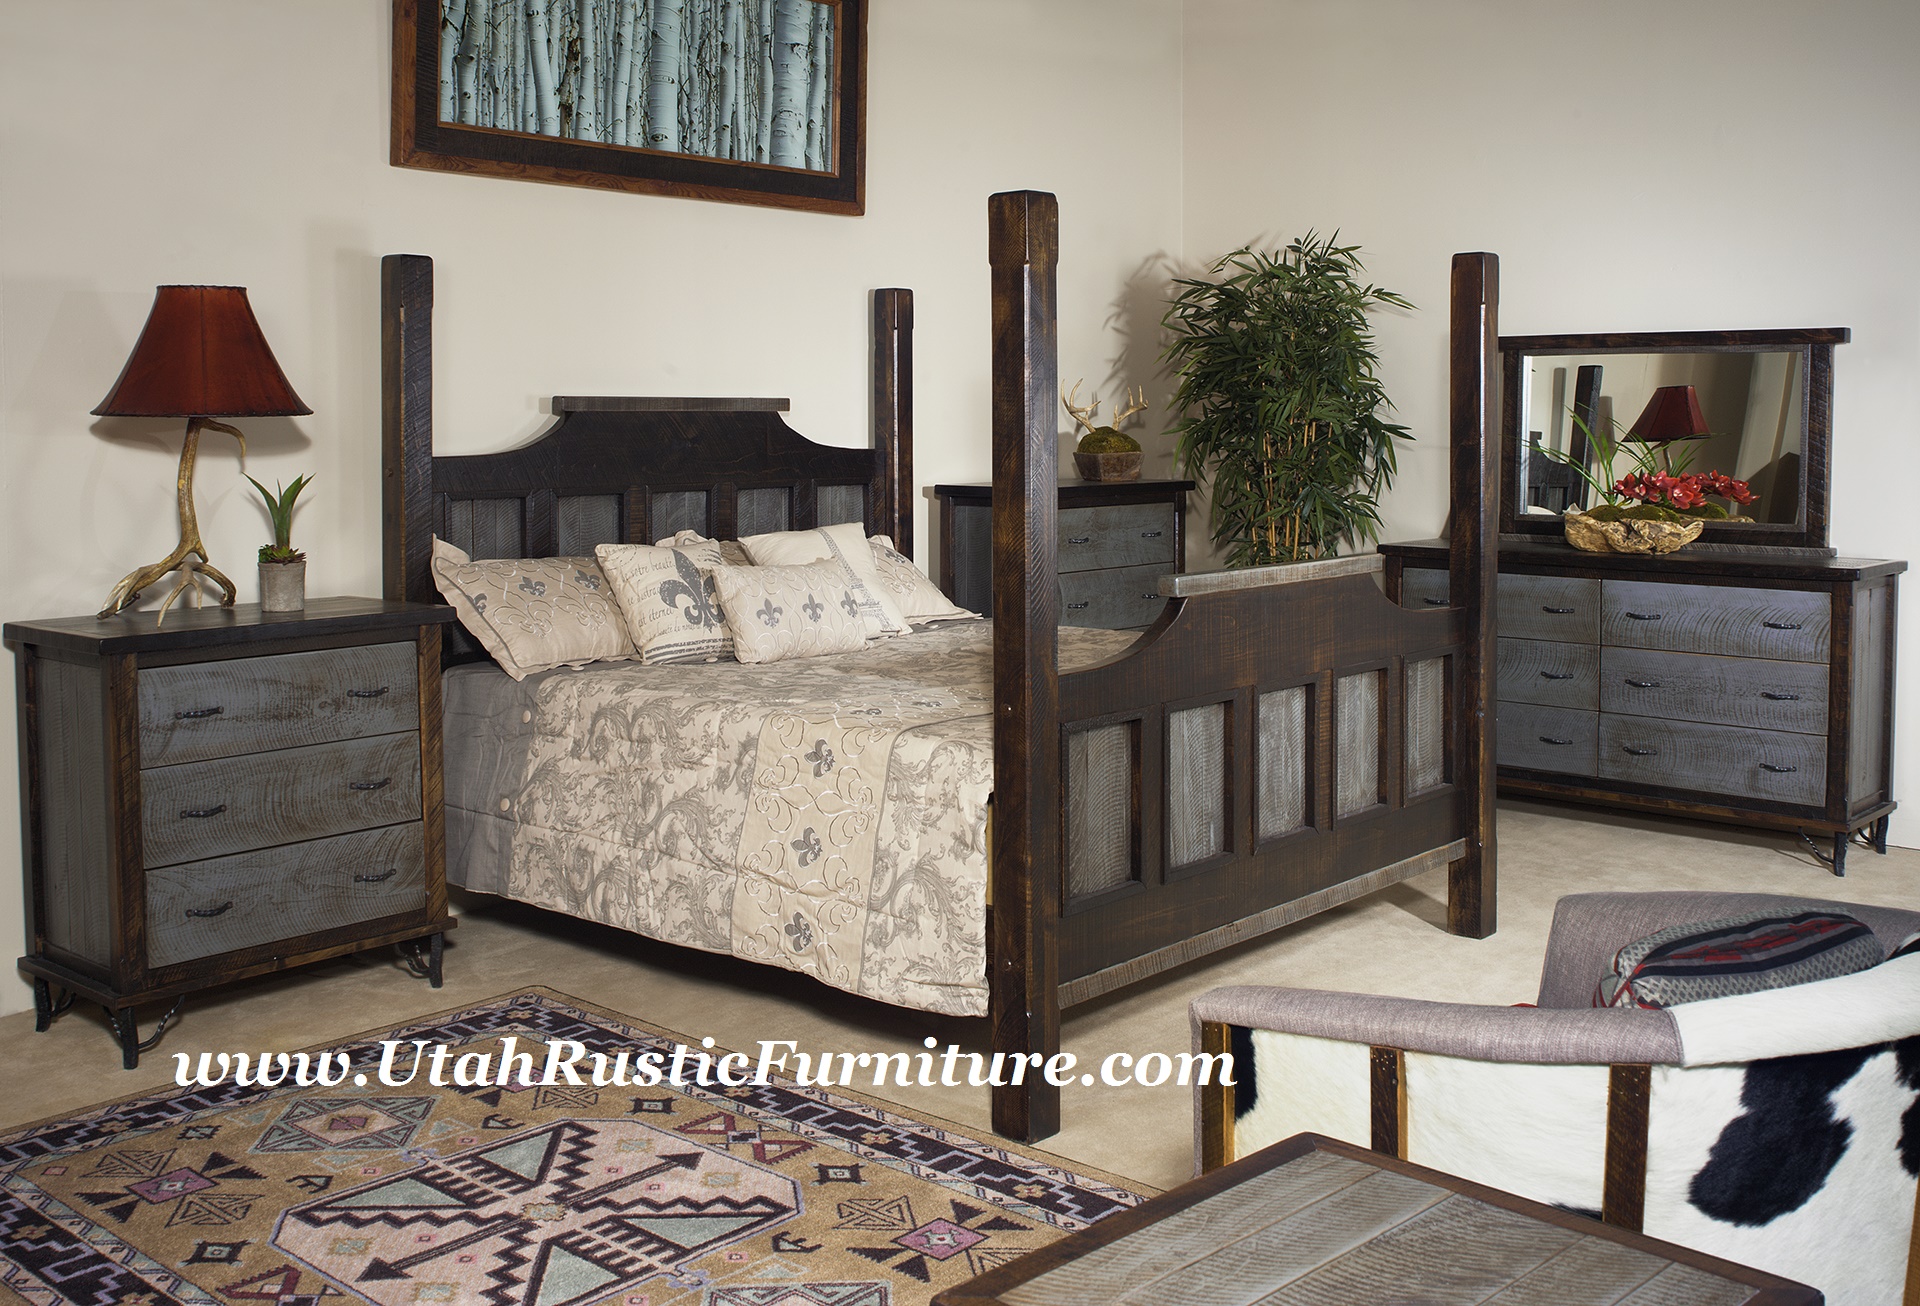 Bradley s Furniture Etc Utah Rustic Bedroom Furniture